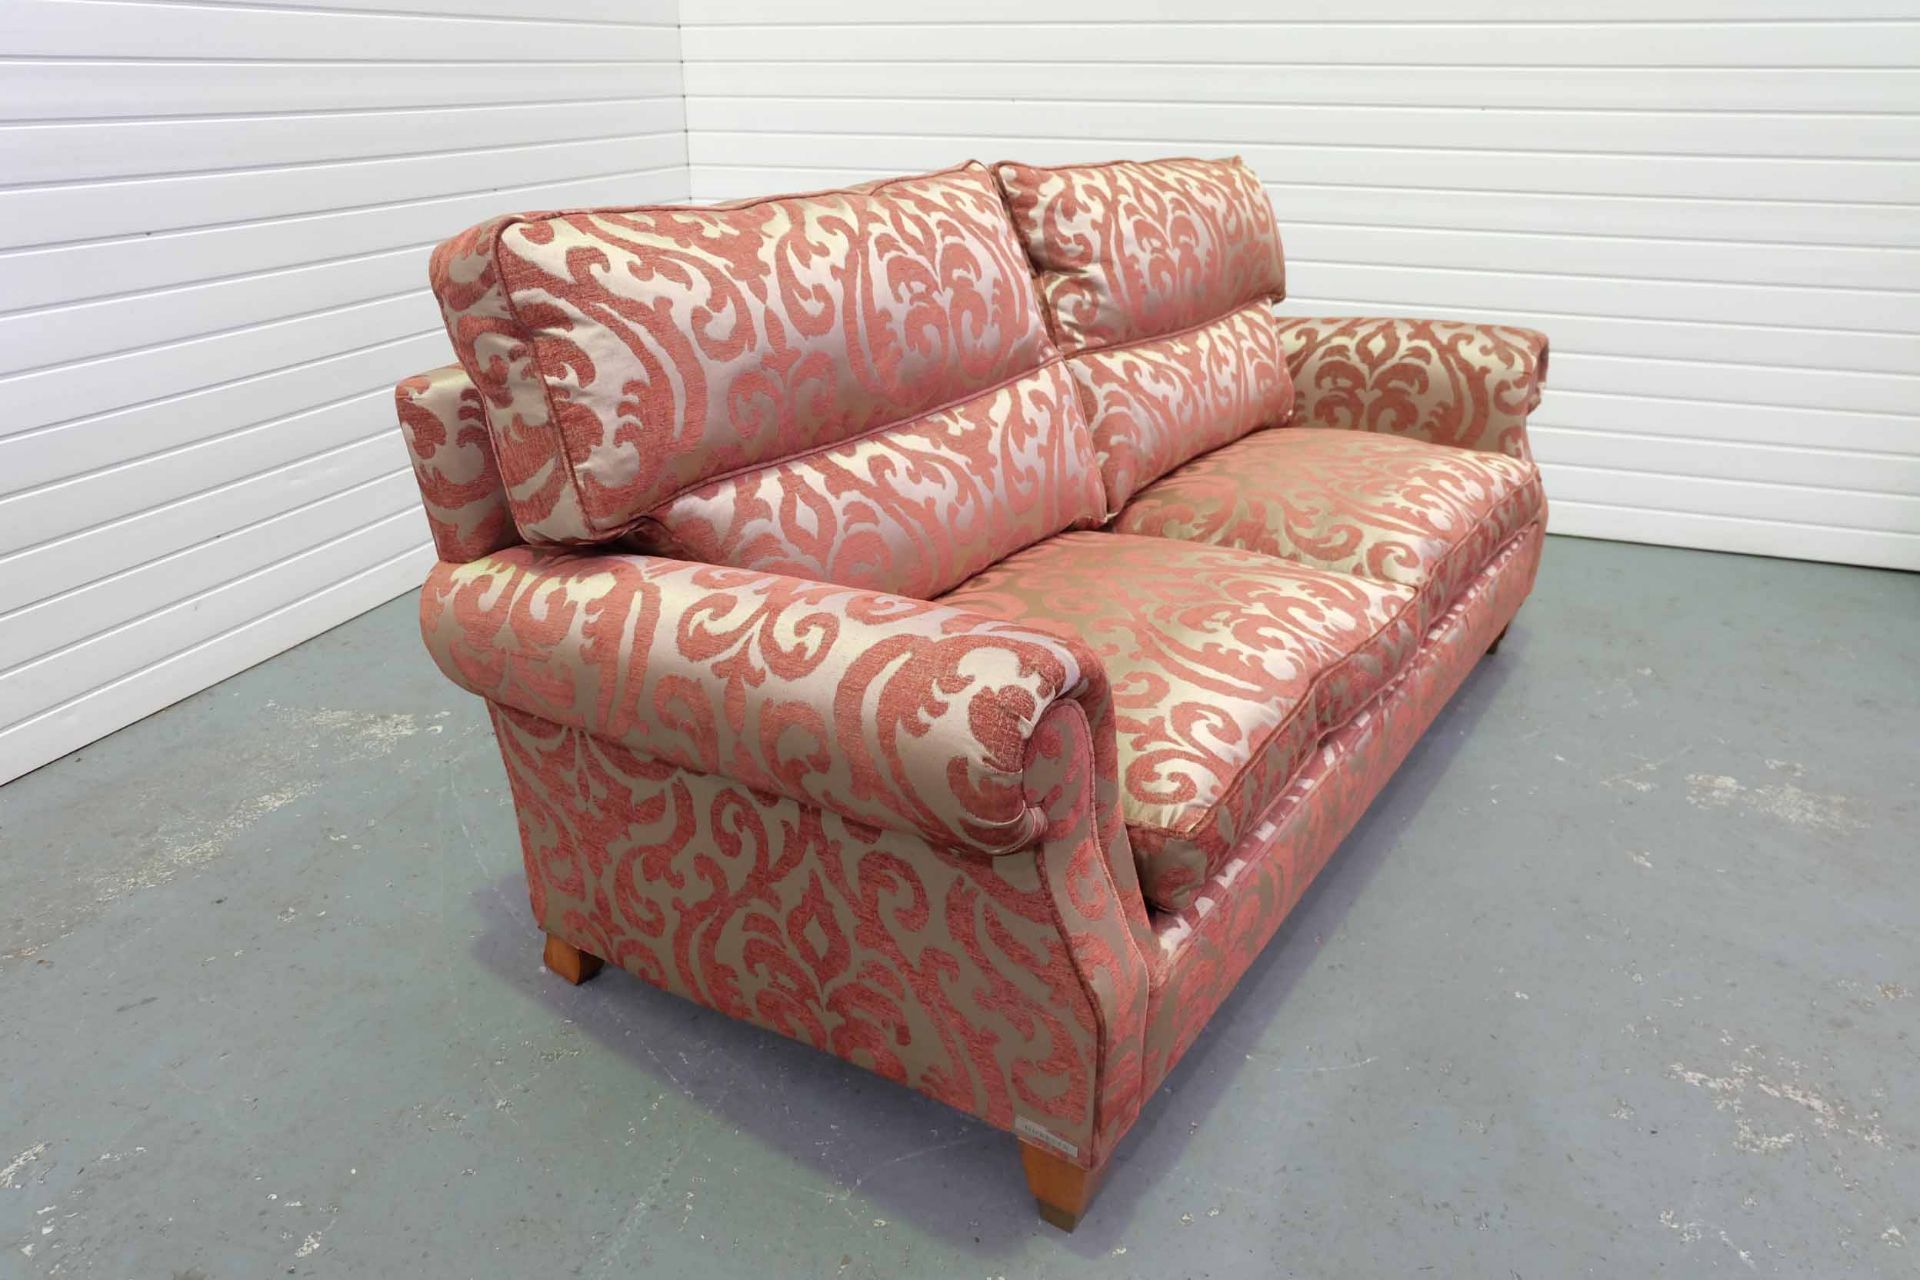 DURESTA 'Beresford' Large 3 Seater Sofa. - Image 3 of 3